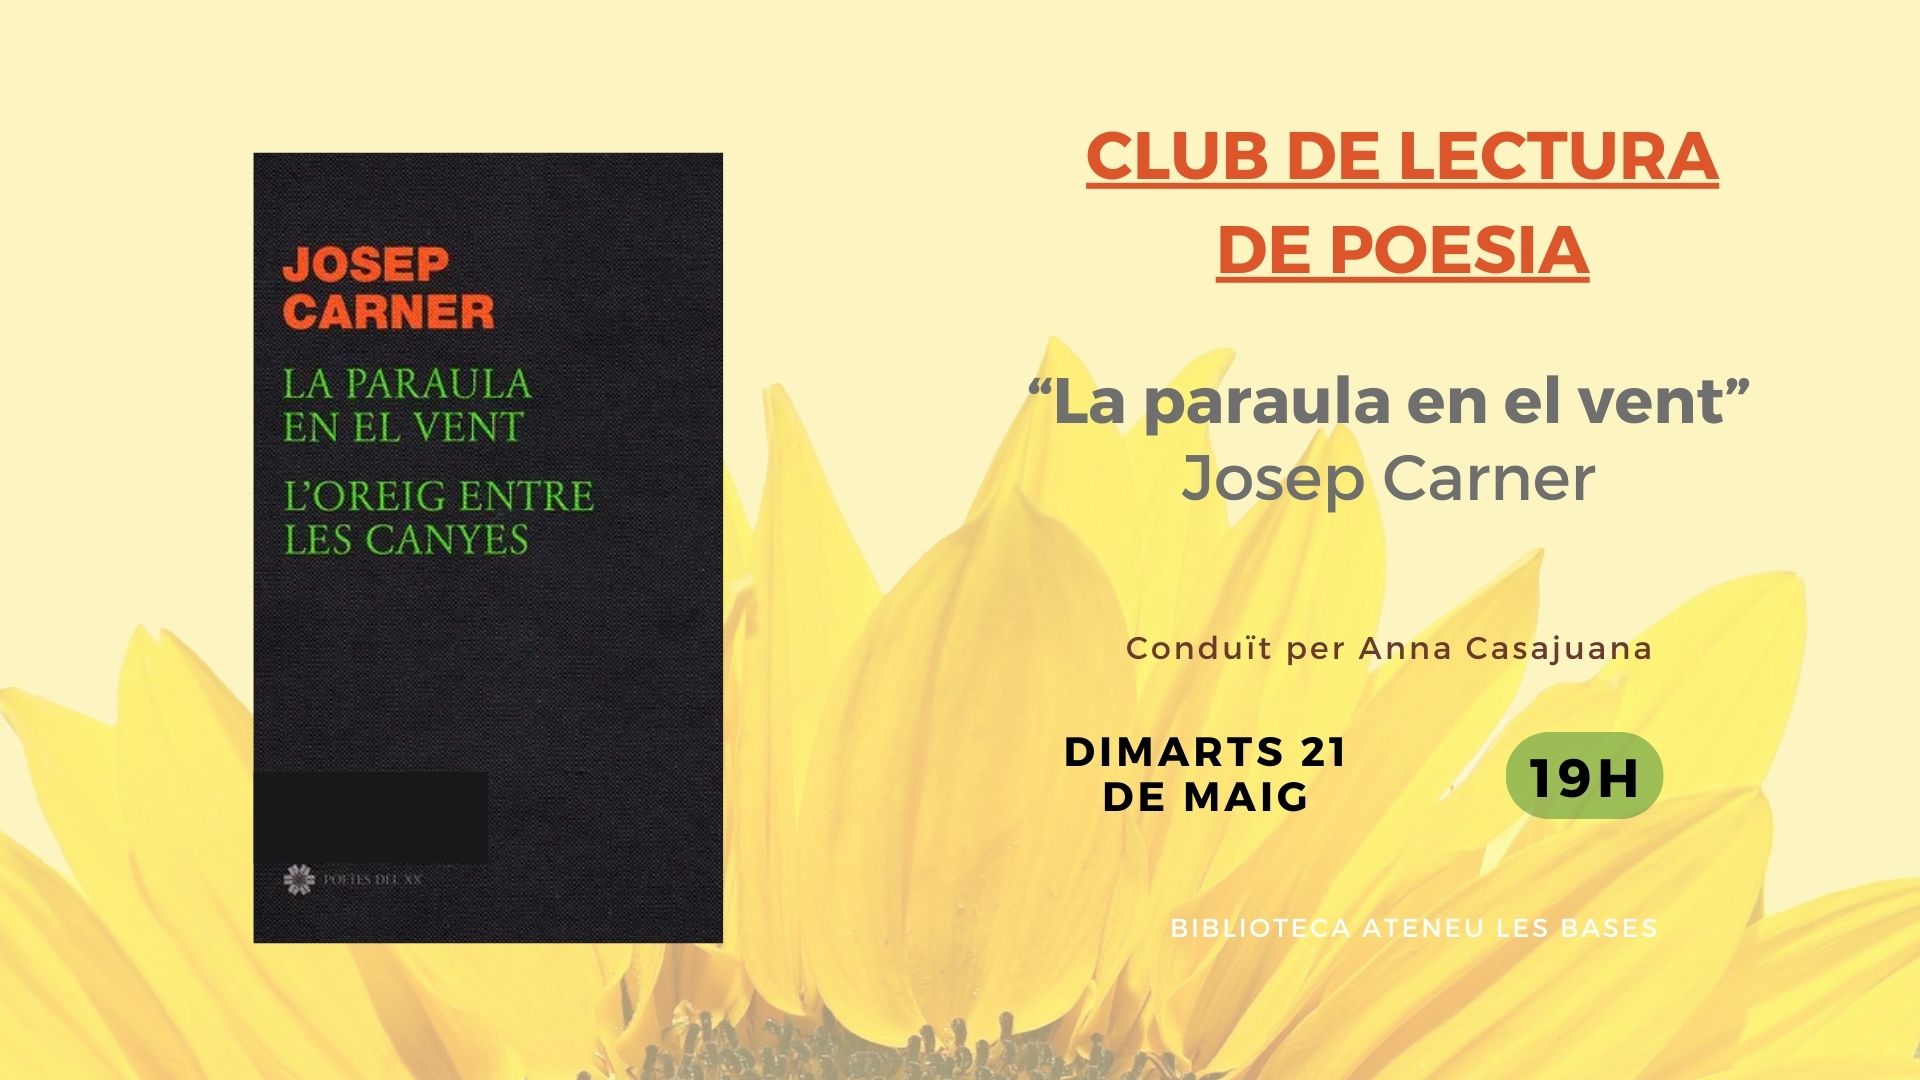 Club de lectura de Poesia